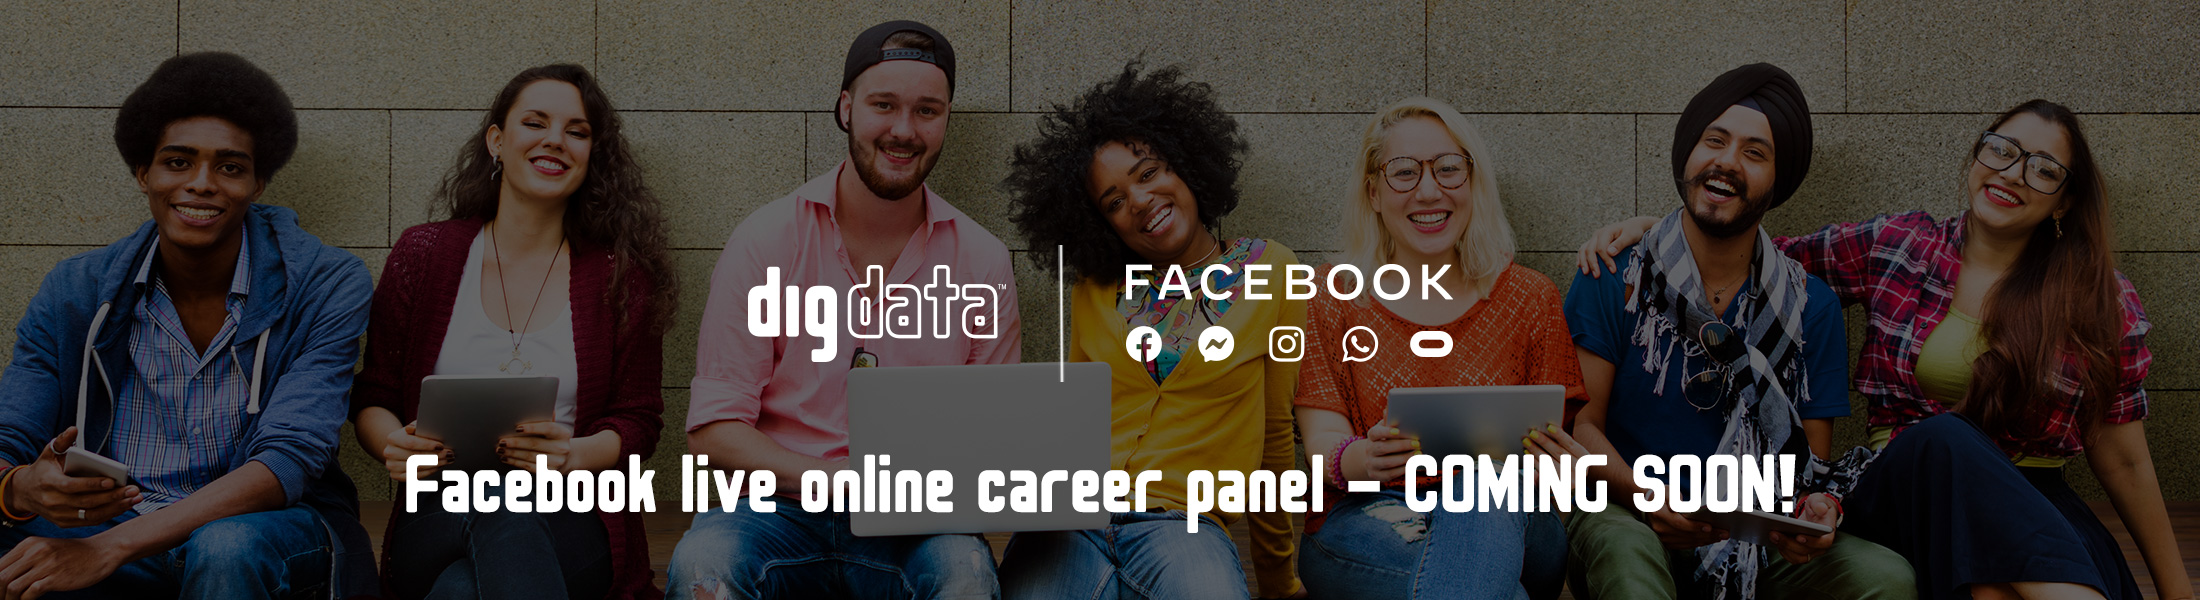 Digdata Facebook live online career panel banner